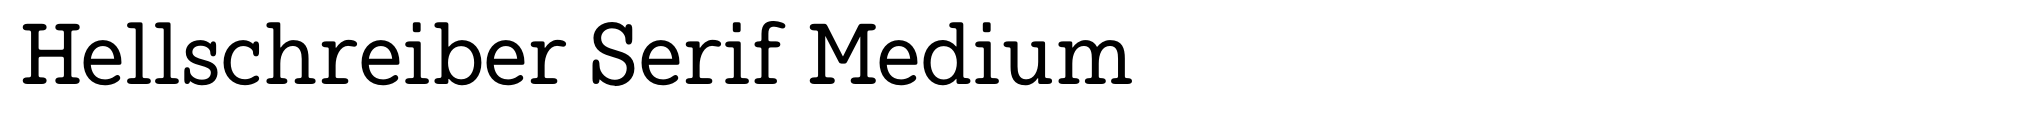 Hellschreiber Serif Medium image